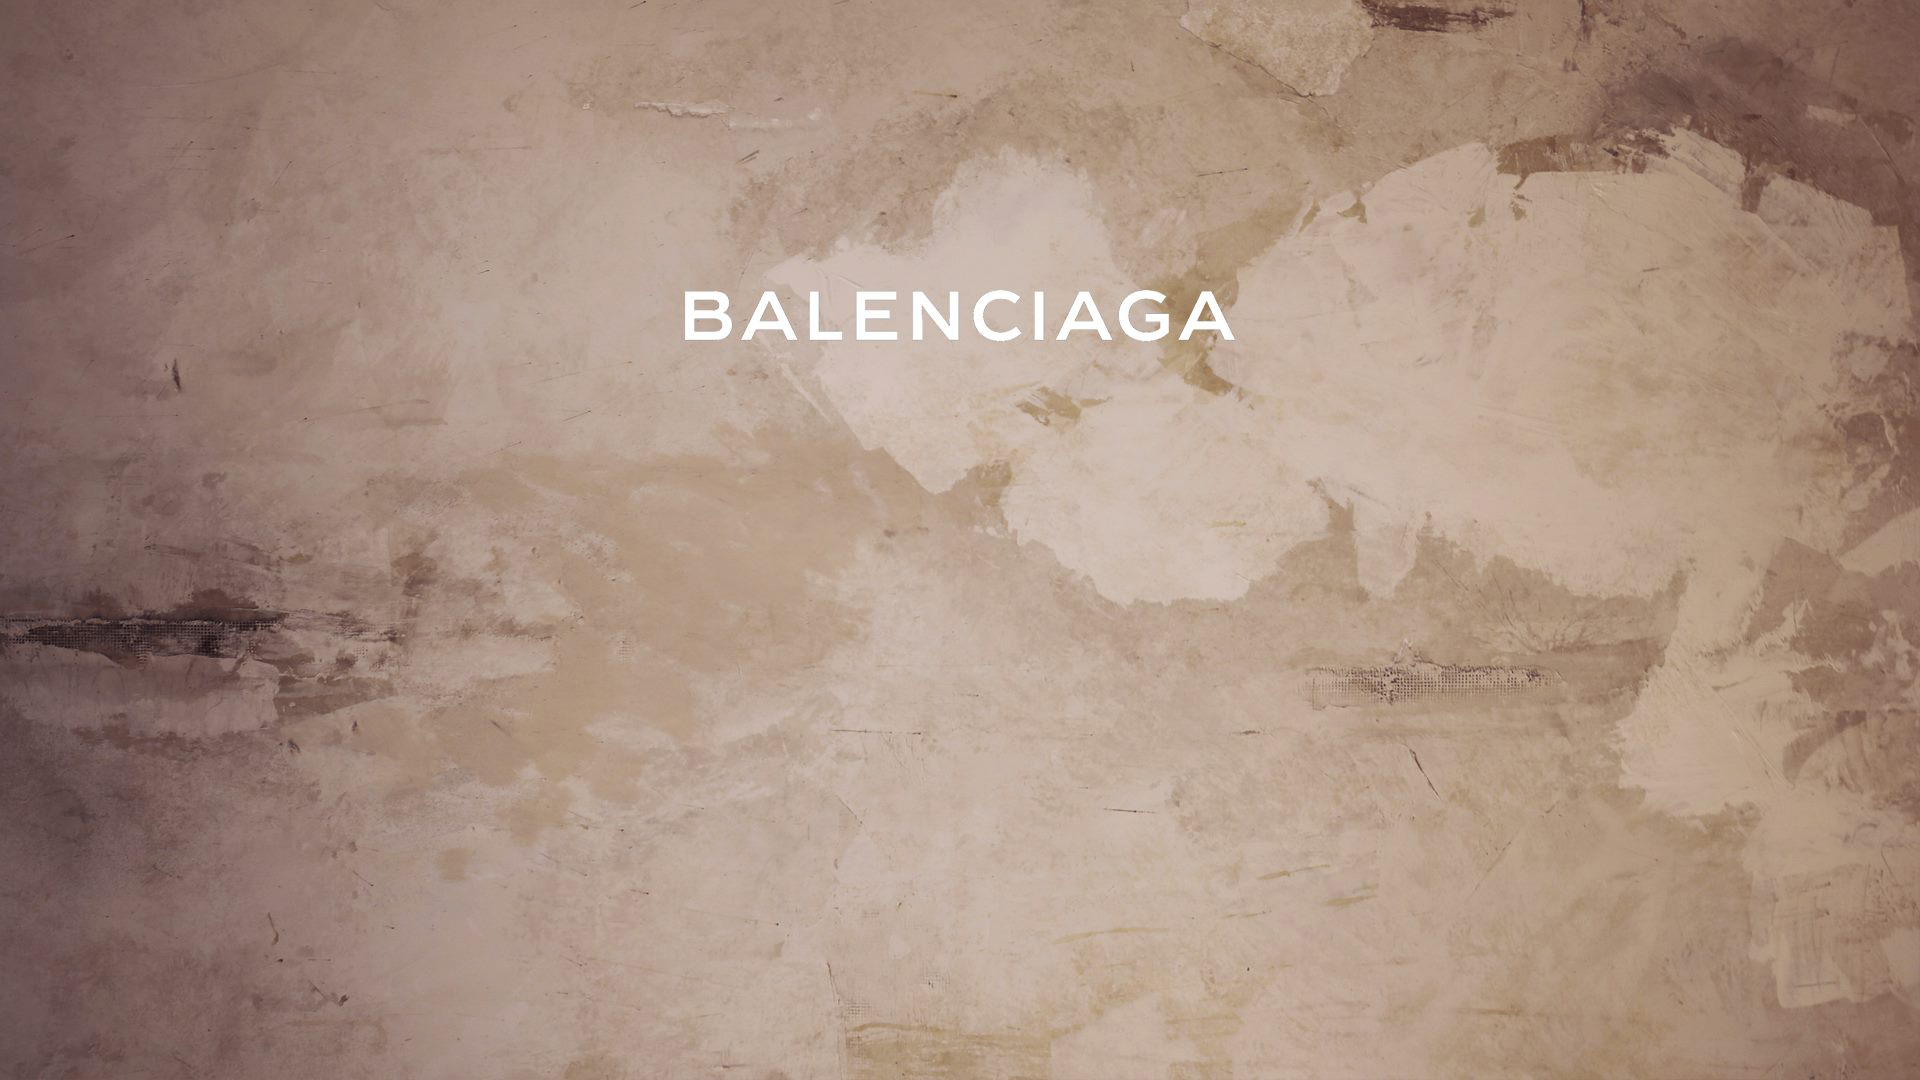 Who Is Demna Gvasalia? Balenciaga Creative Director Addresses Photo Furor